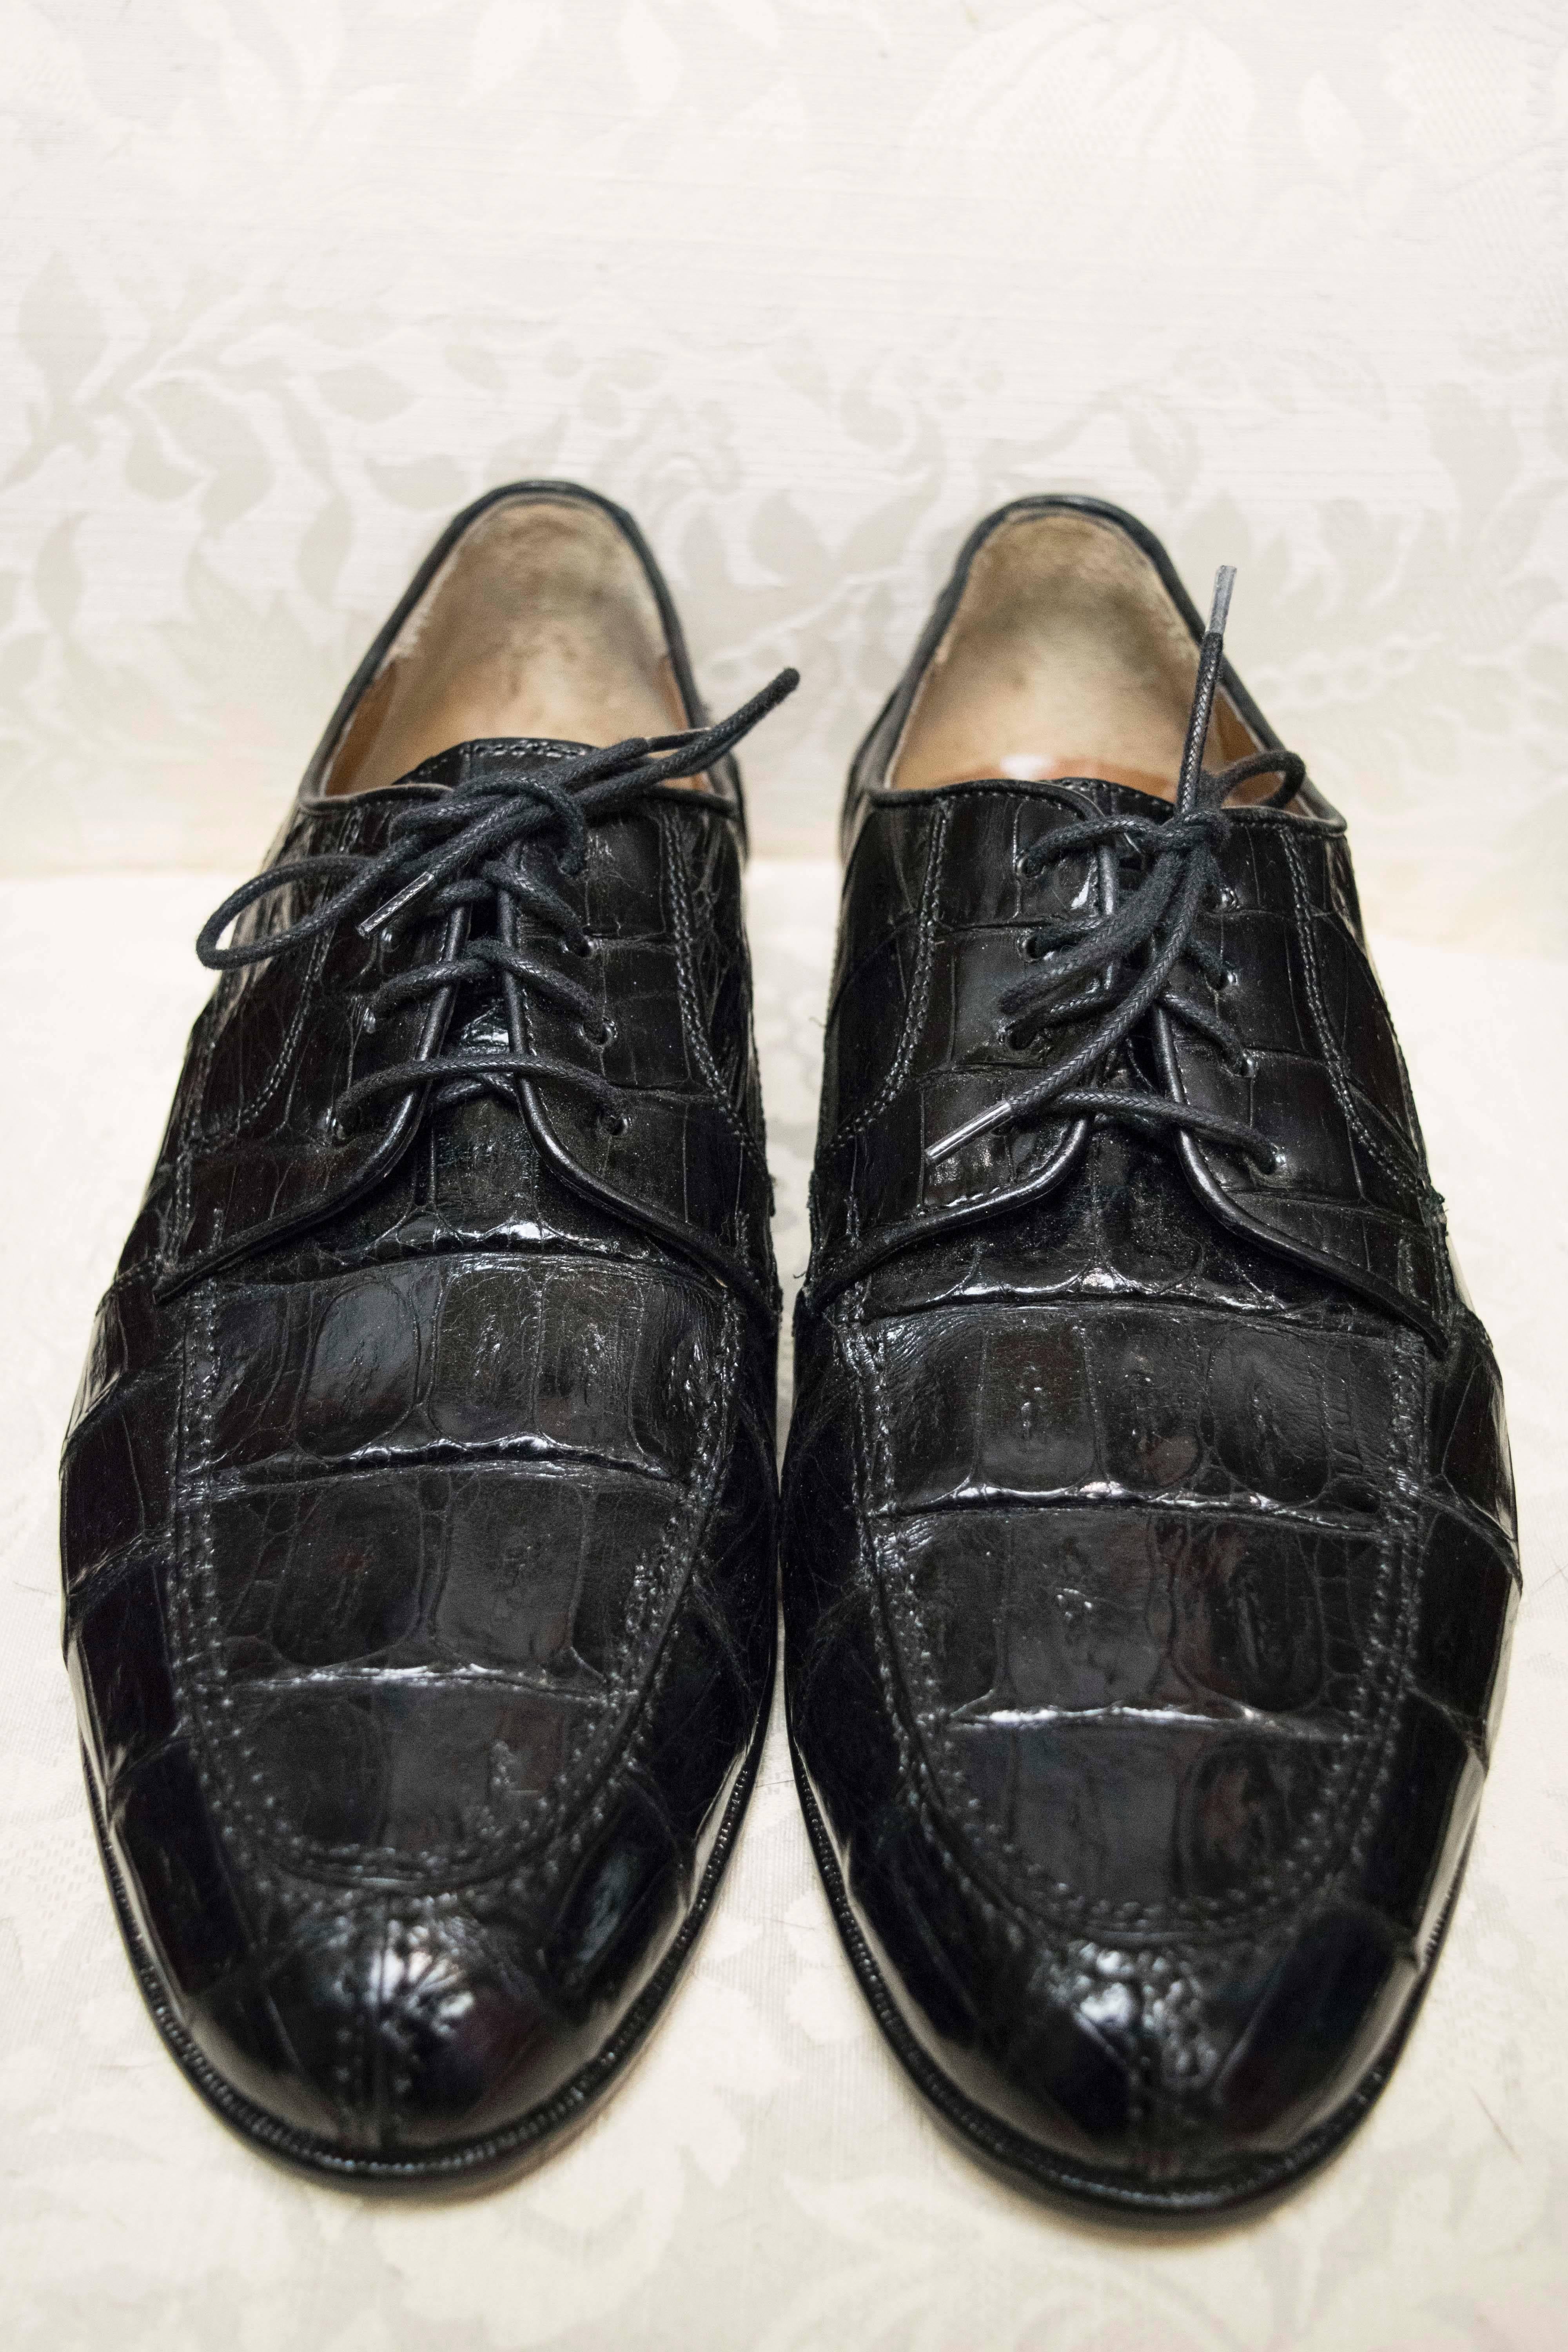 belvedere alligator shoes